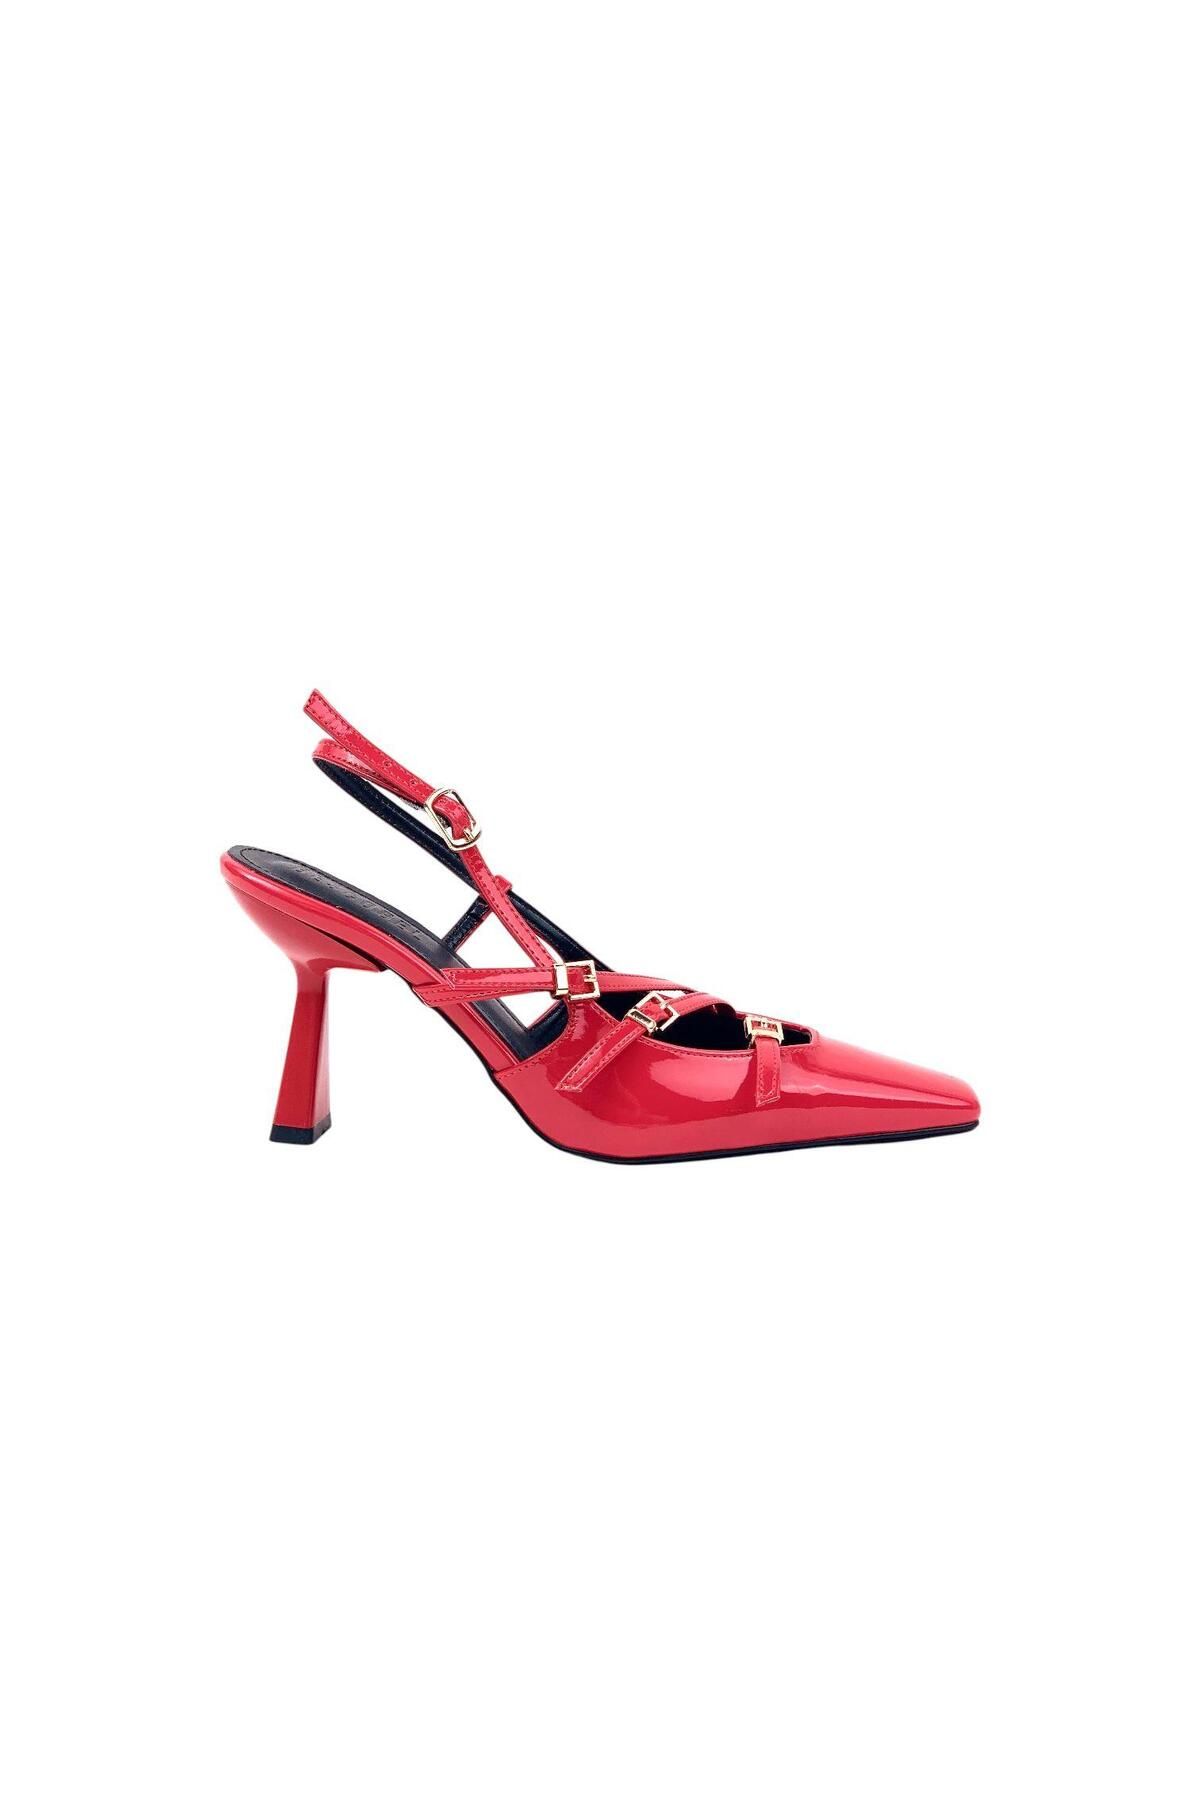 bescobel Kadın Keyta Kırmızı İnce Topuk 3 Tokalı Günlük Ayakkabı 8cm 766